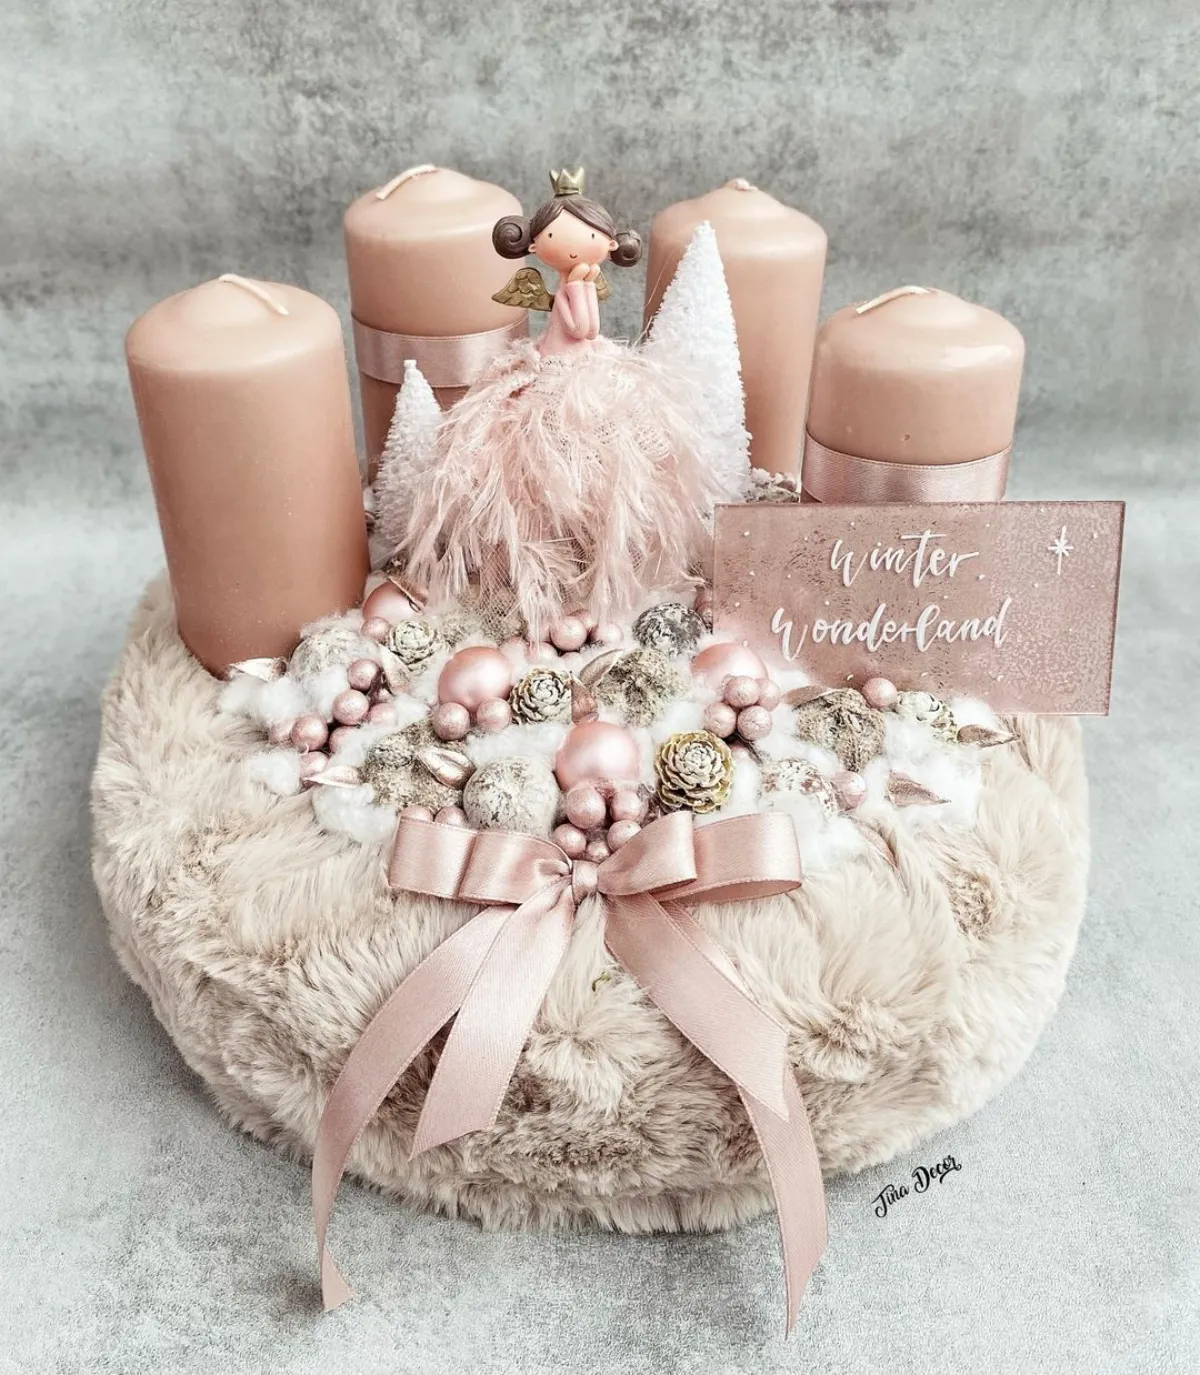 cadeau de noel chic et pas cher centre de table bougies rose pastel figurine princesse